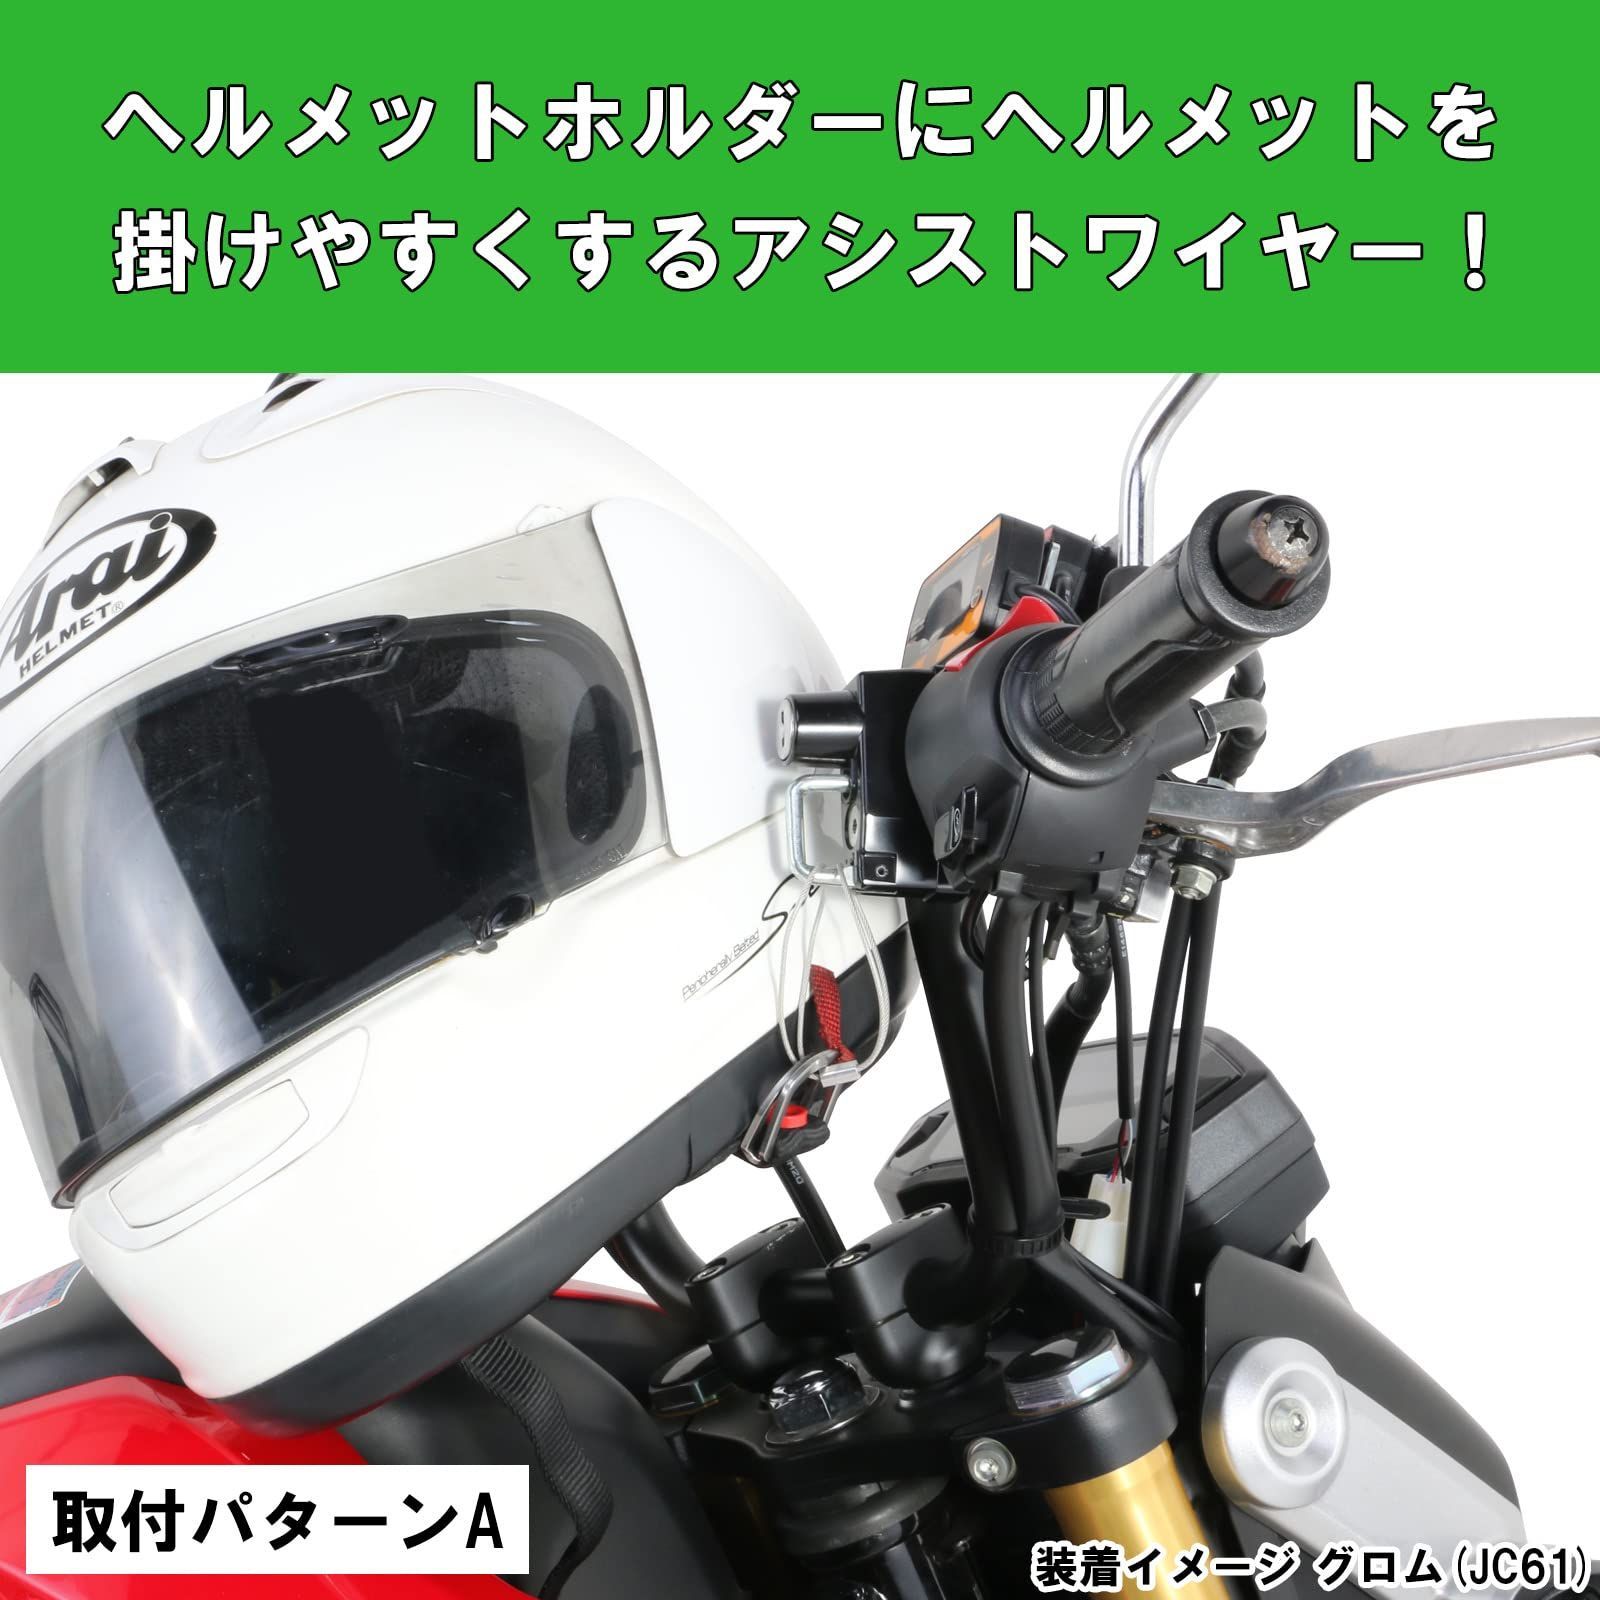 特価セールキタコKITACO ヘルメットロックアシストワイヤー 汎用 0900-503-00010 - メルカリ